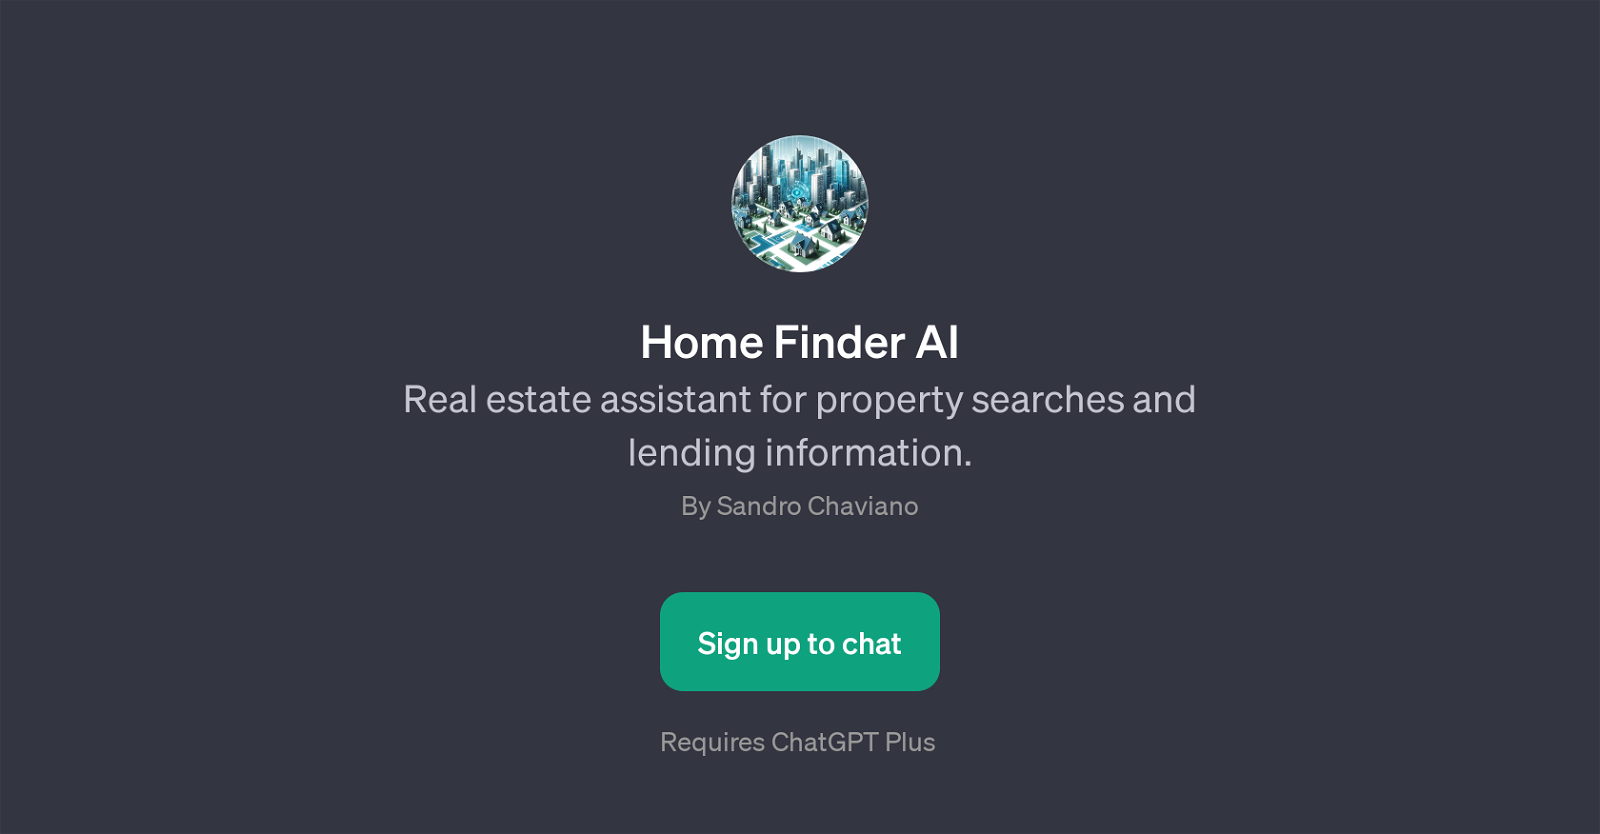 Home Finder AI website